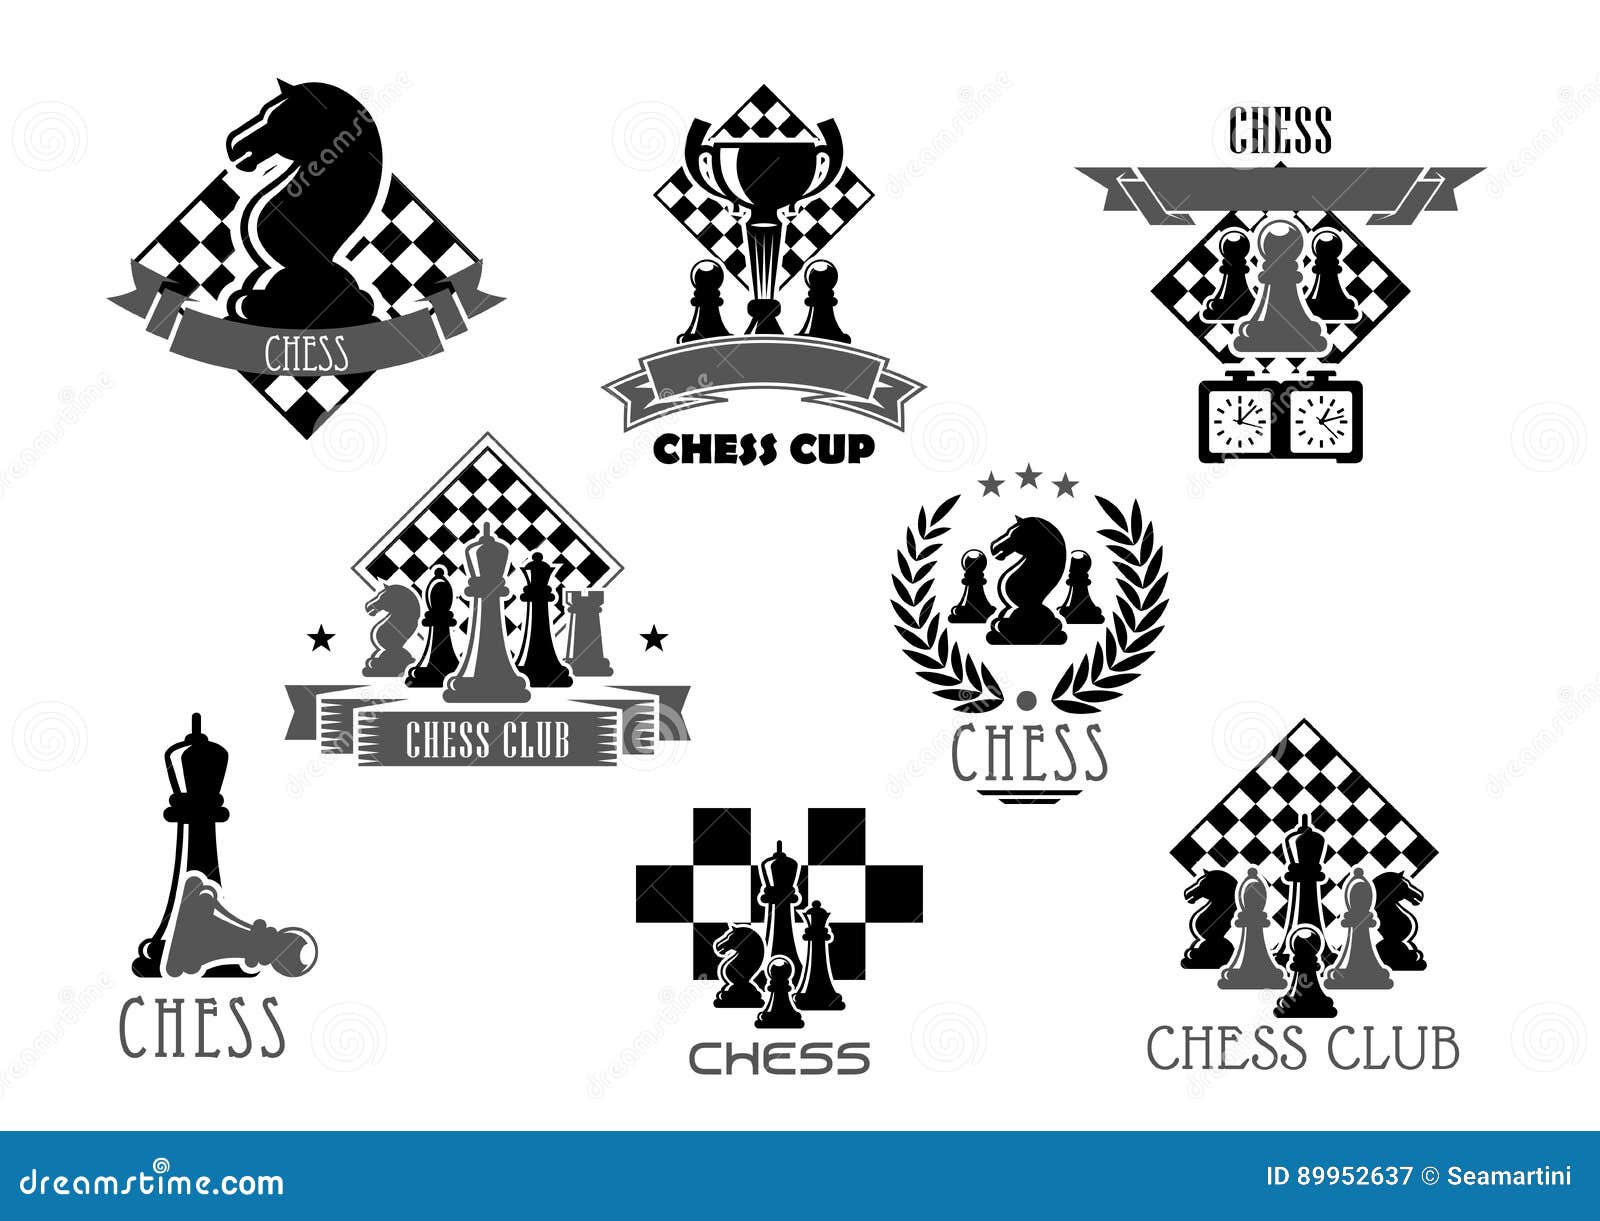 Clube de Xadrez Scacorum Ludus: Estereótipo do jogador de xadrez na  sociedade moderna